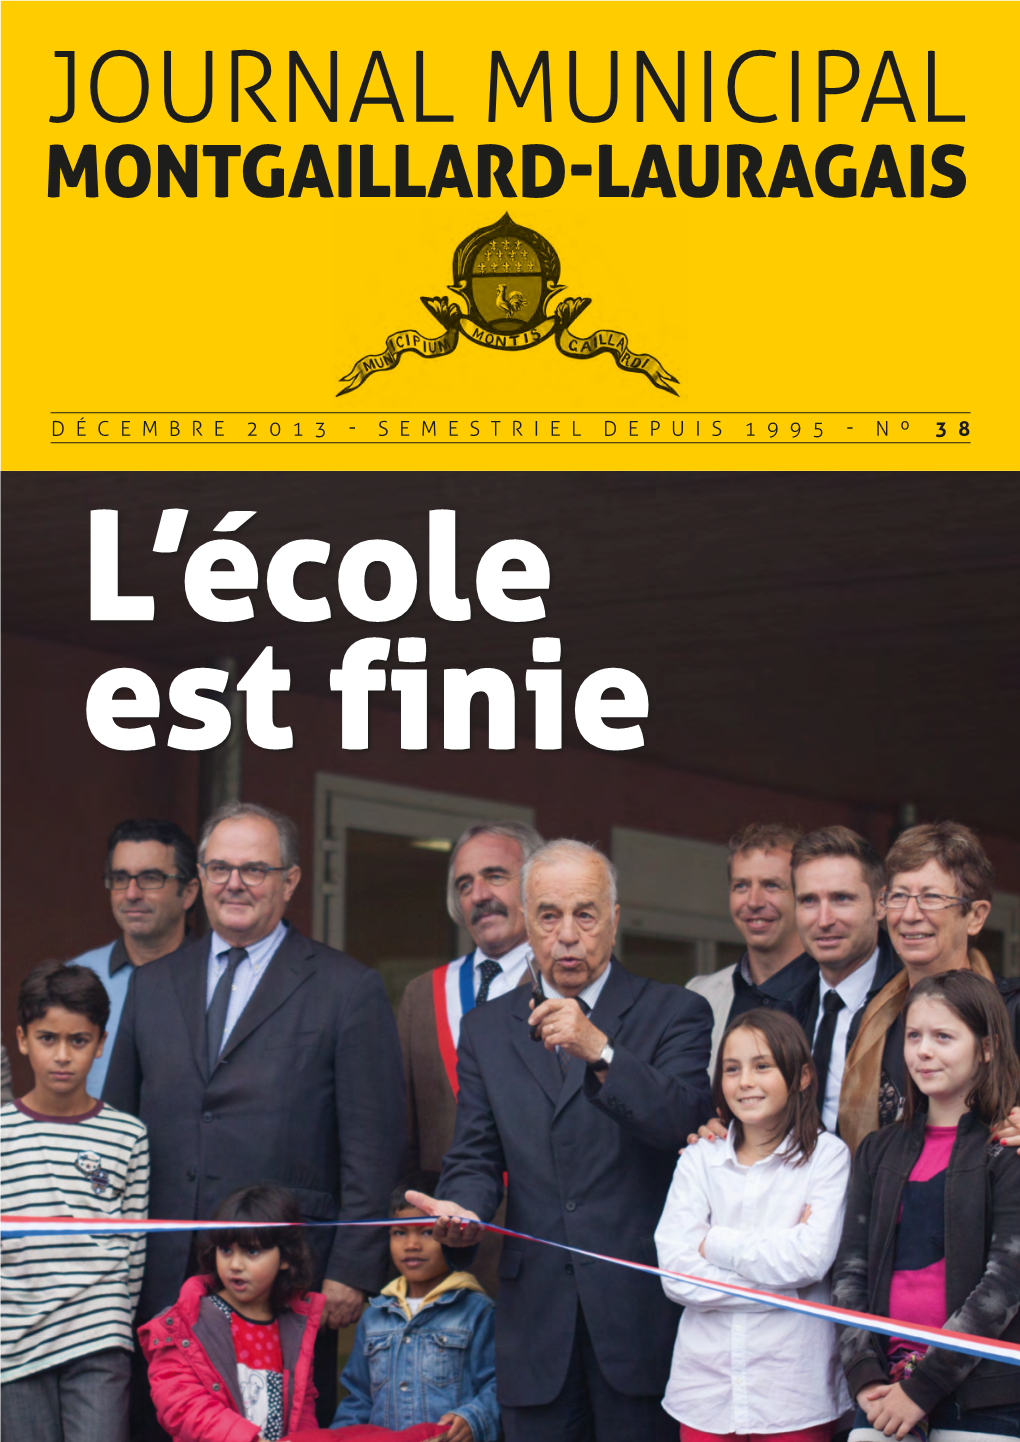 Journal Municipal Montgaillard-Lauragais